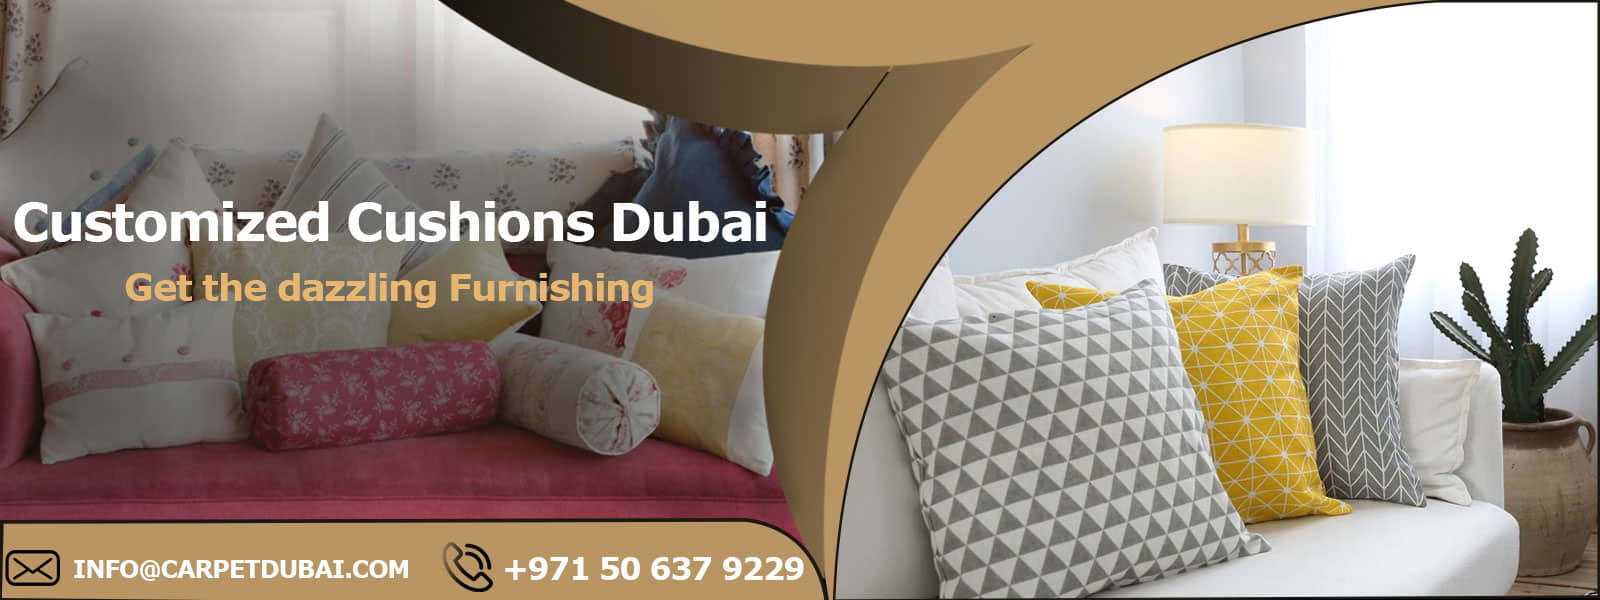 Customized-Cushions-Dubai banner